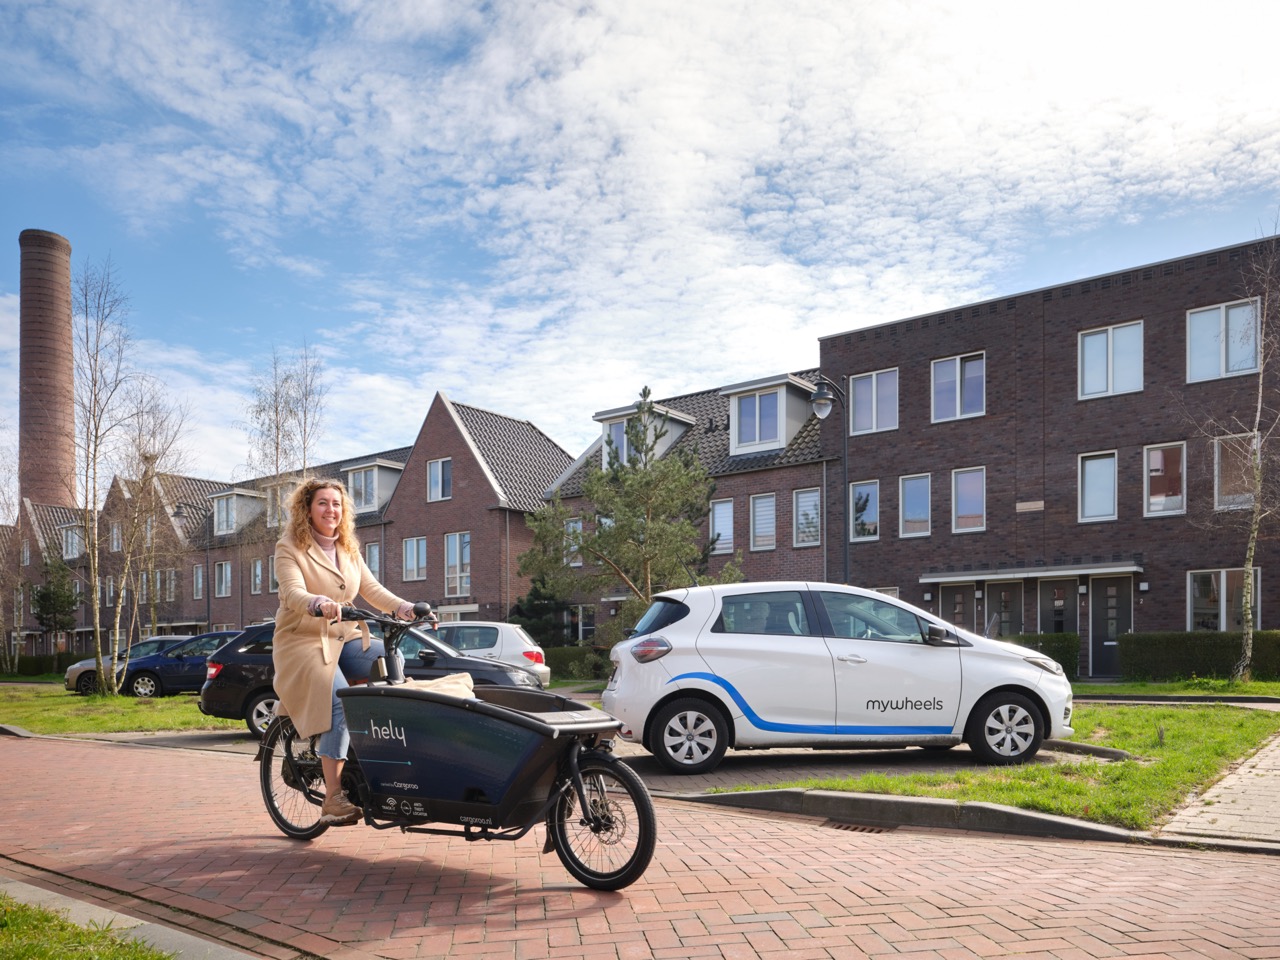 Foto van vrouw met bakfiets in woonwijk en elektrische deelauto op achtergrond